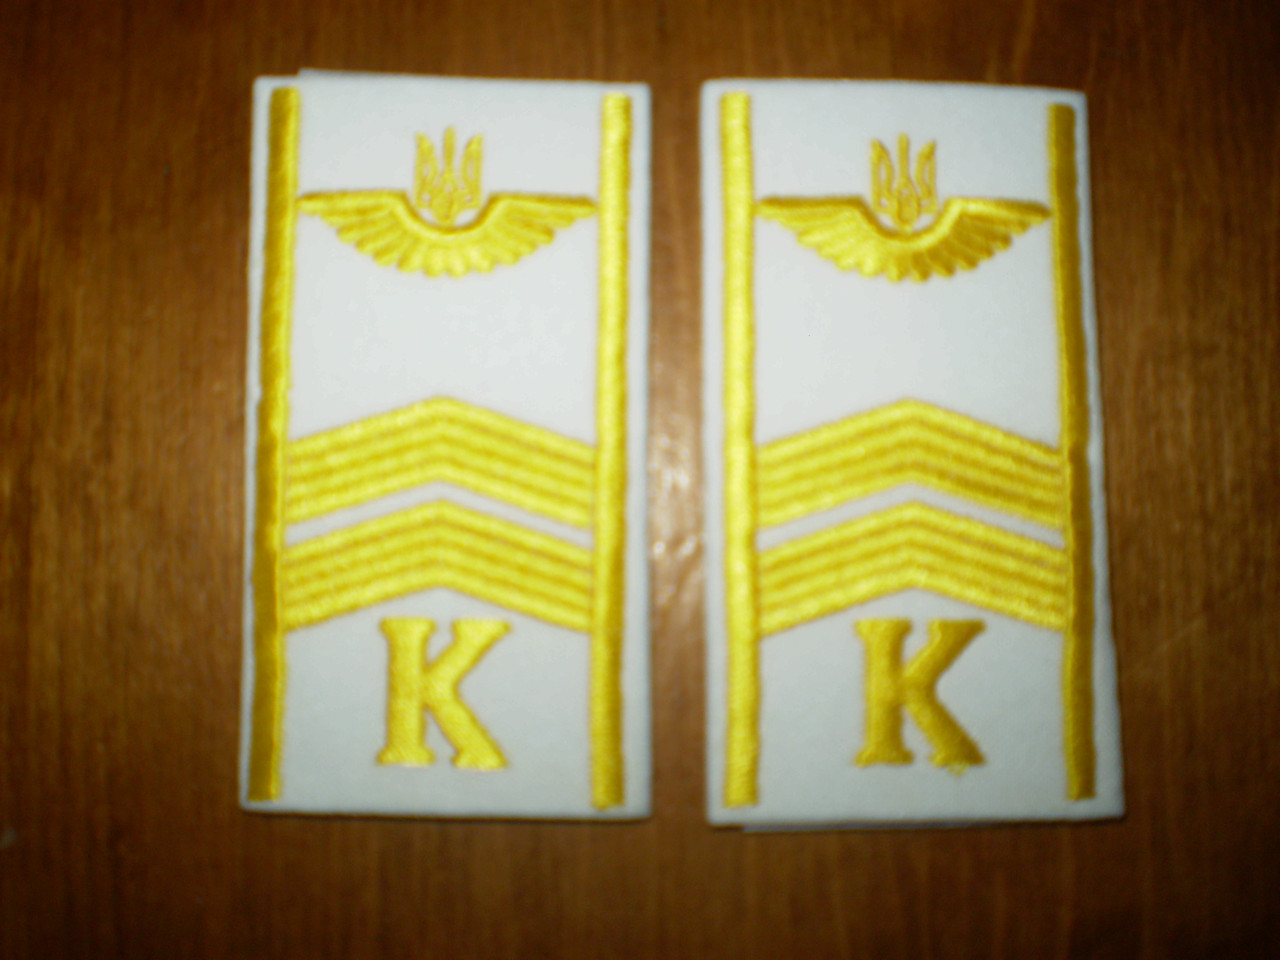 Погони курсантські цивільної авіації на сорочку "К" 2 смуги вишиті жовтим, герб, білі